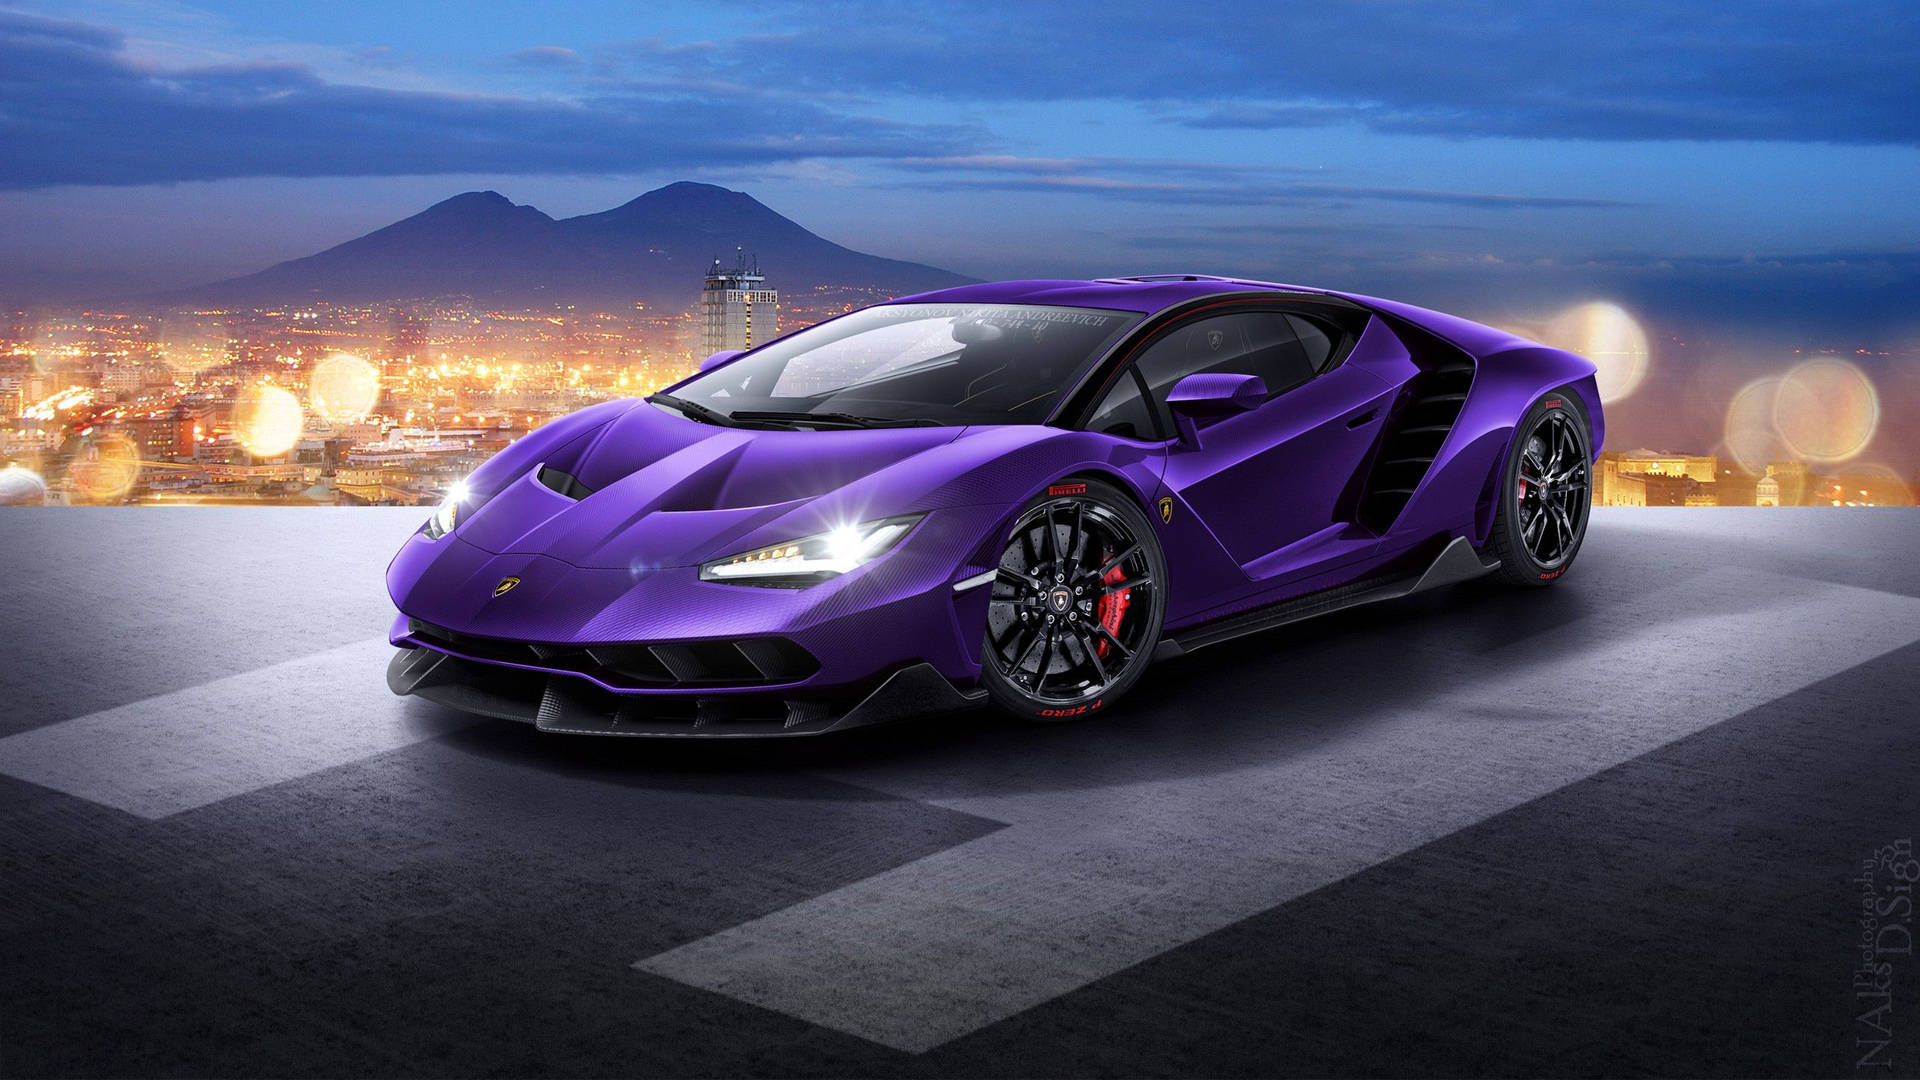 Cooleautos: Violetter Lamborghini Wallpaper